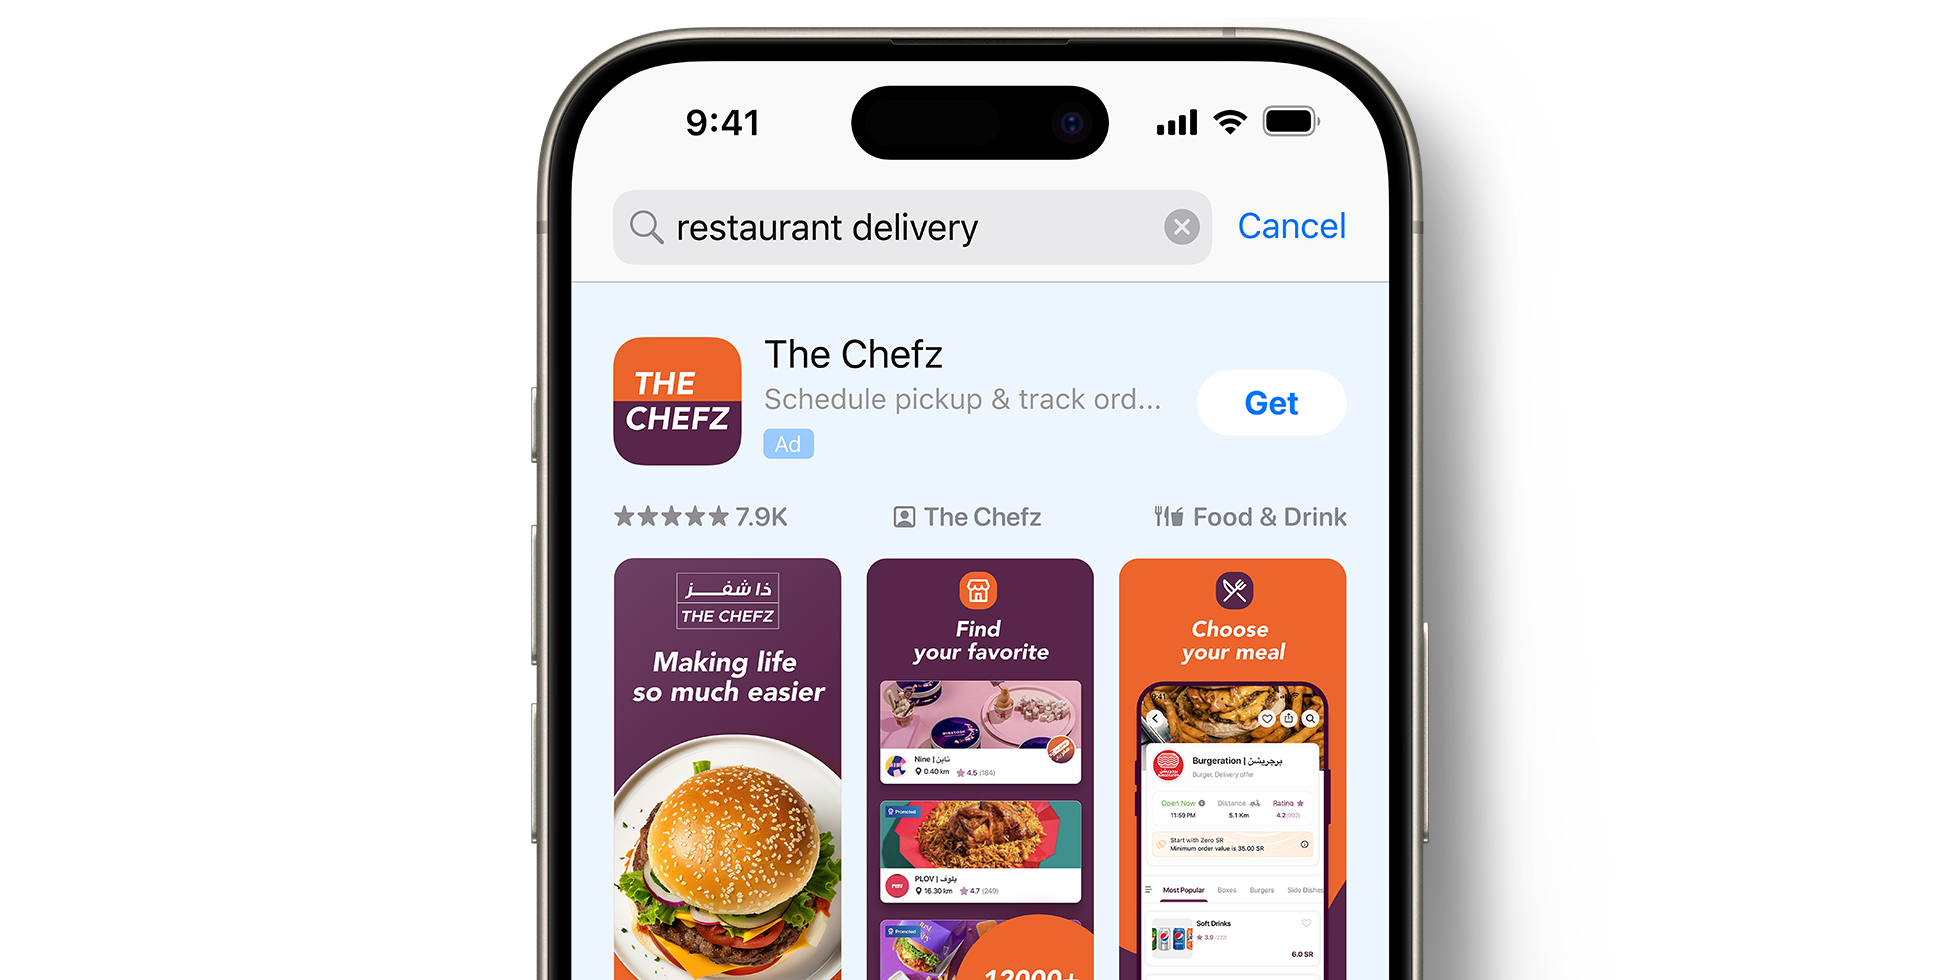 Anzeige für die App „The Chefz“ im App Store